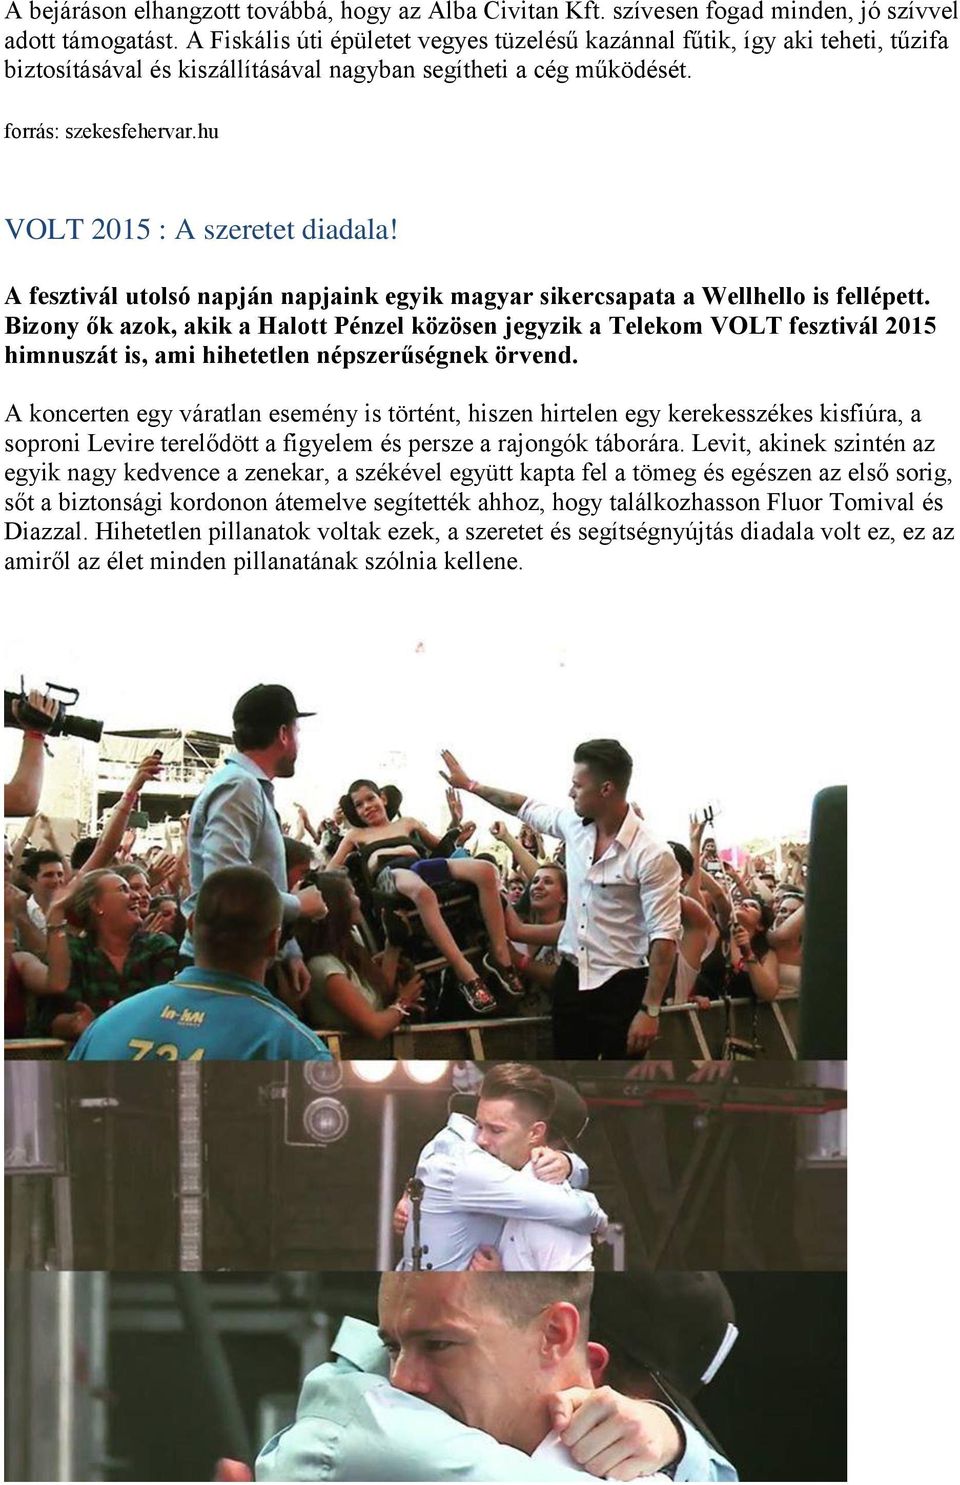 hu VOLT 2015 : A szeretet diadala! A fesztivál utolsó napján napjaink egyik magyar sikercsapata a Wellhello is fellépett.